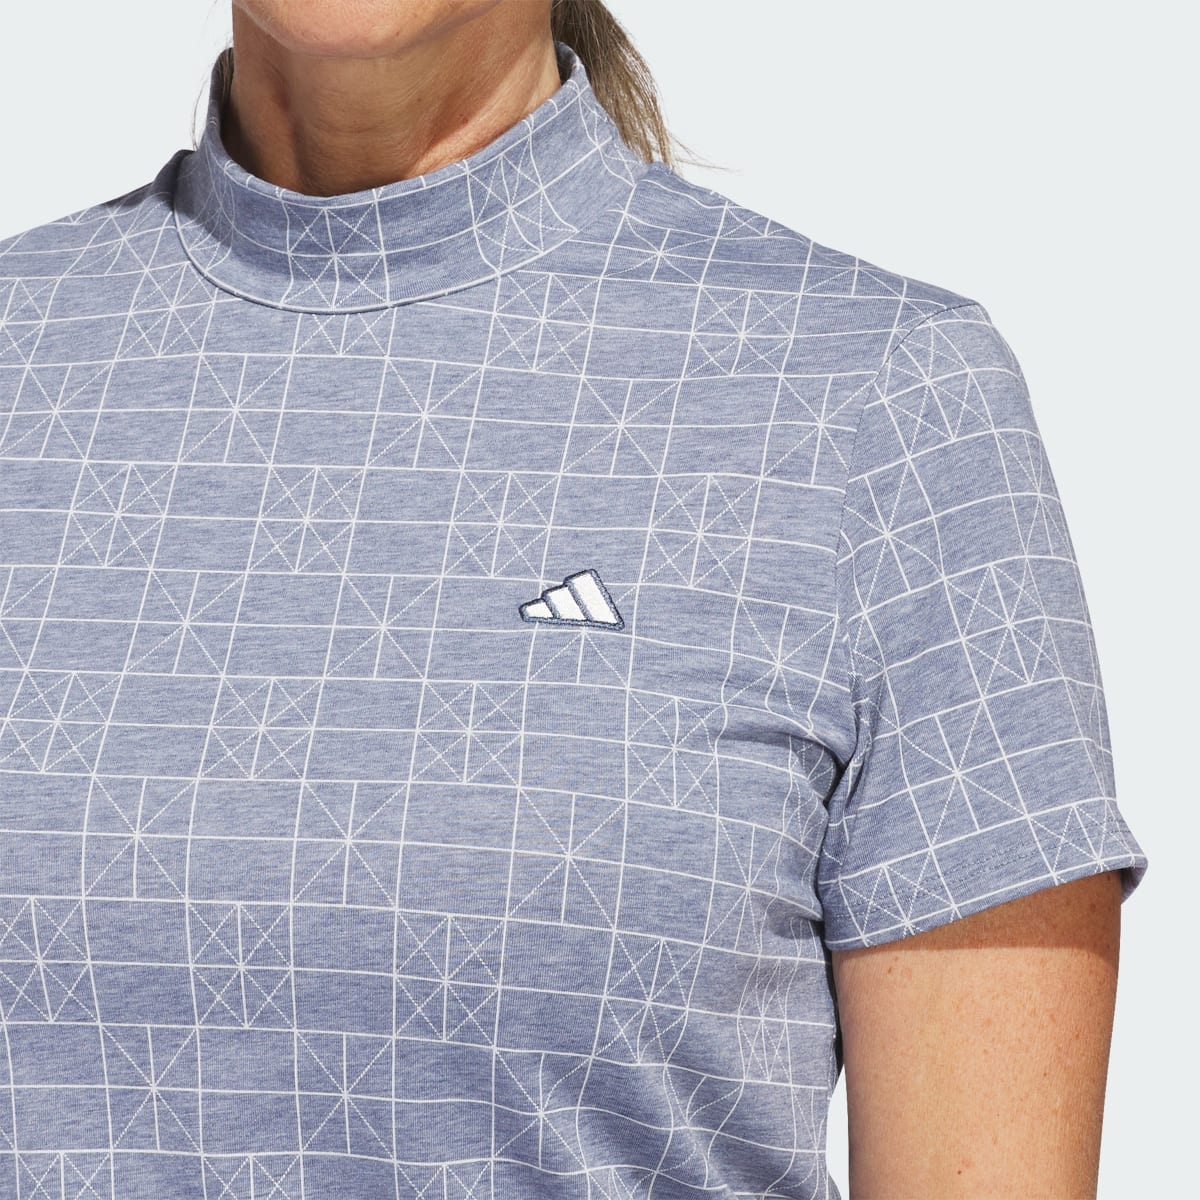 Adidas Go-To Printed Polo Shirt. 6